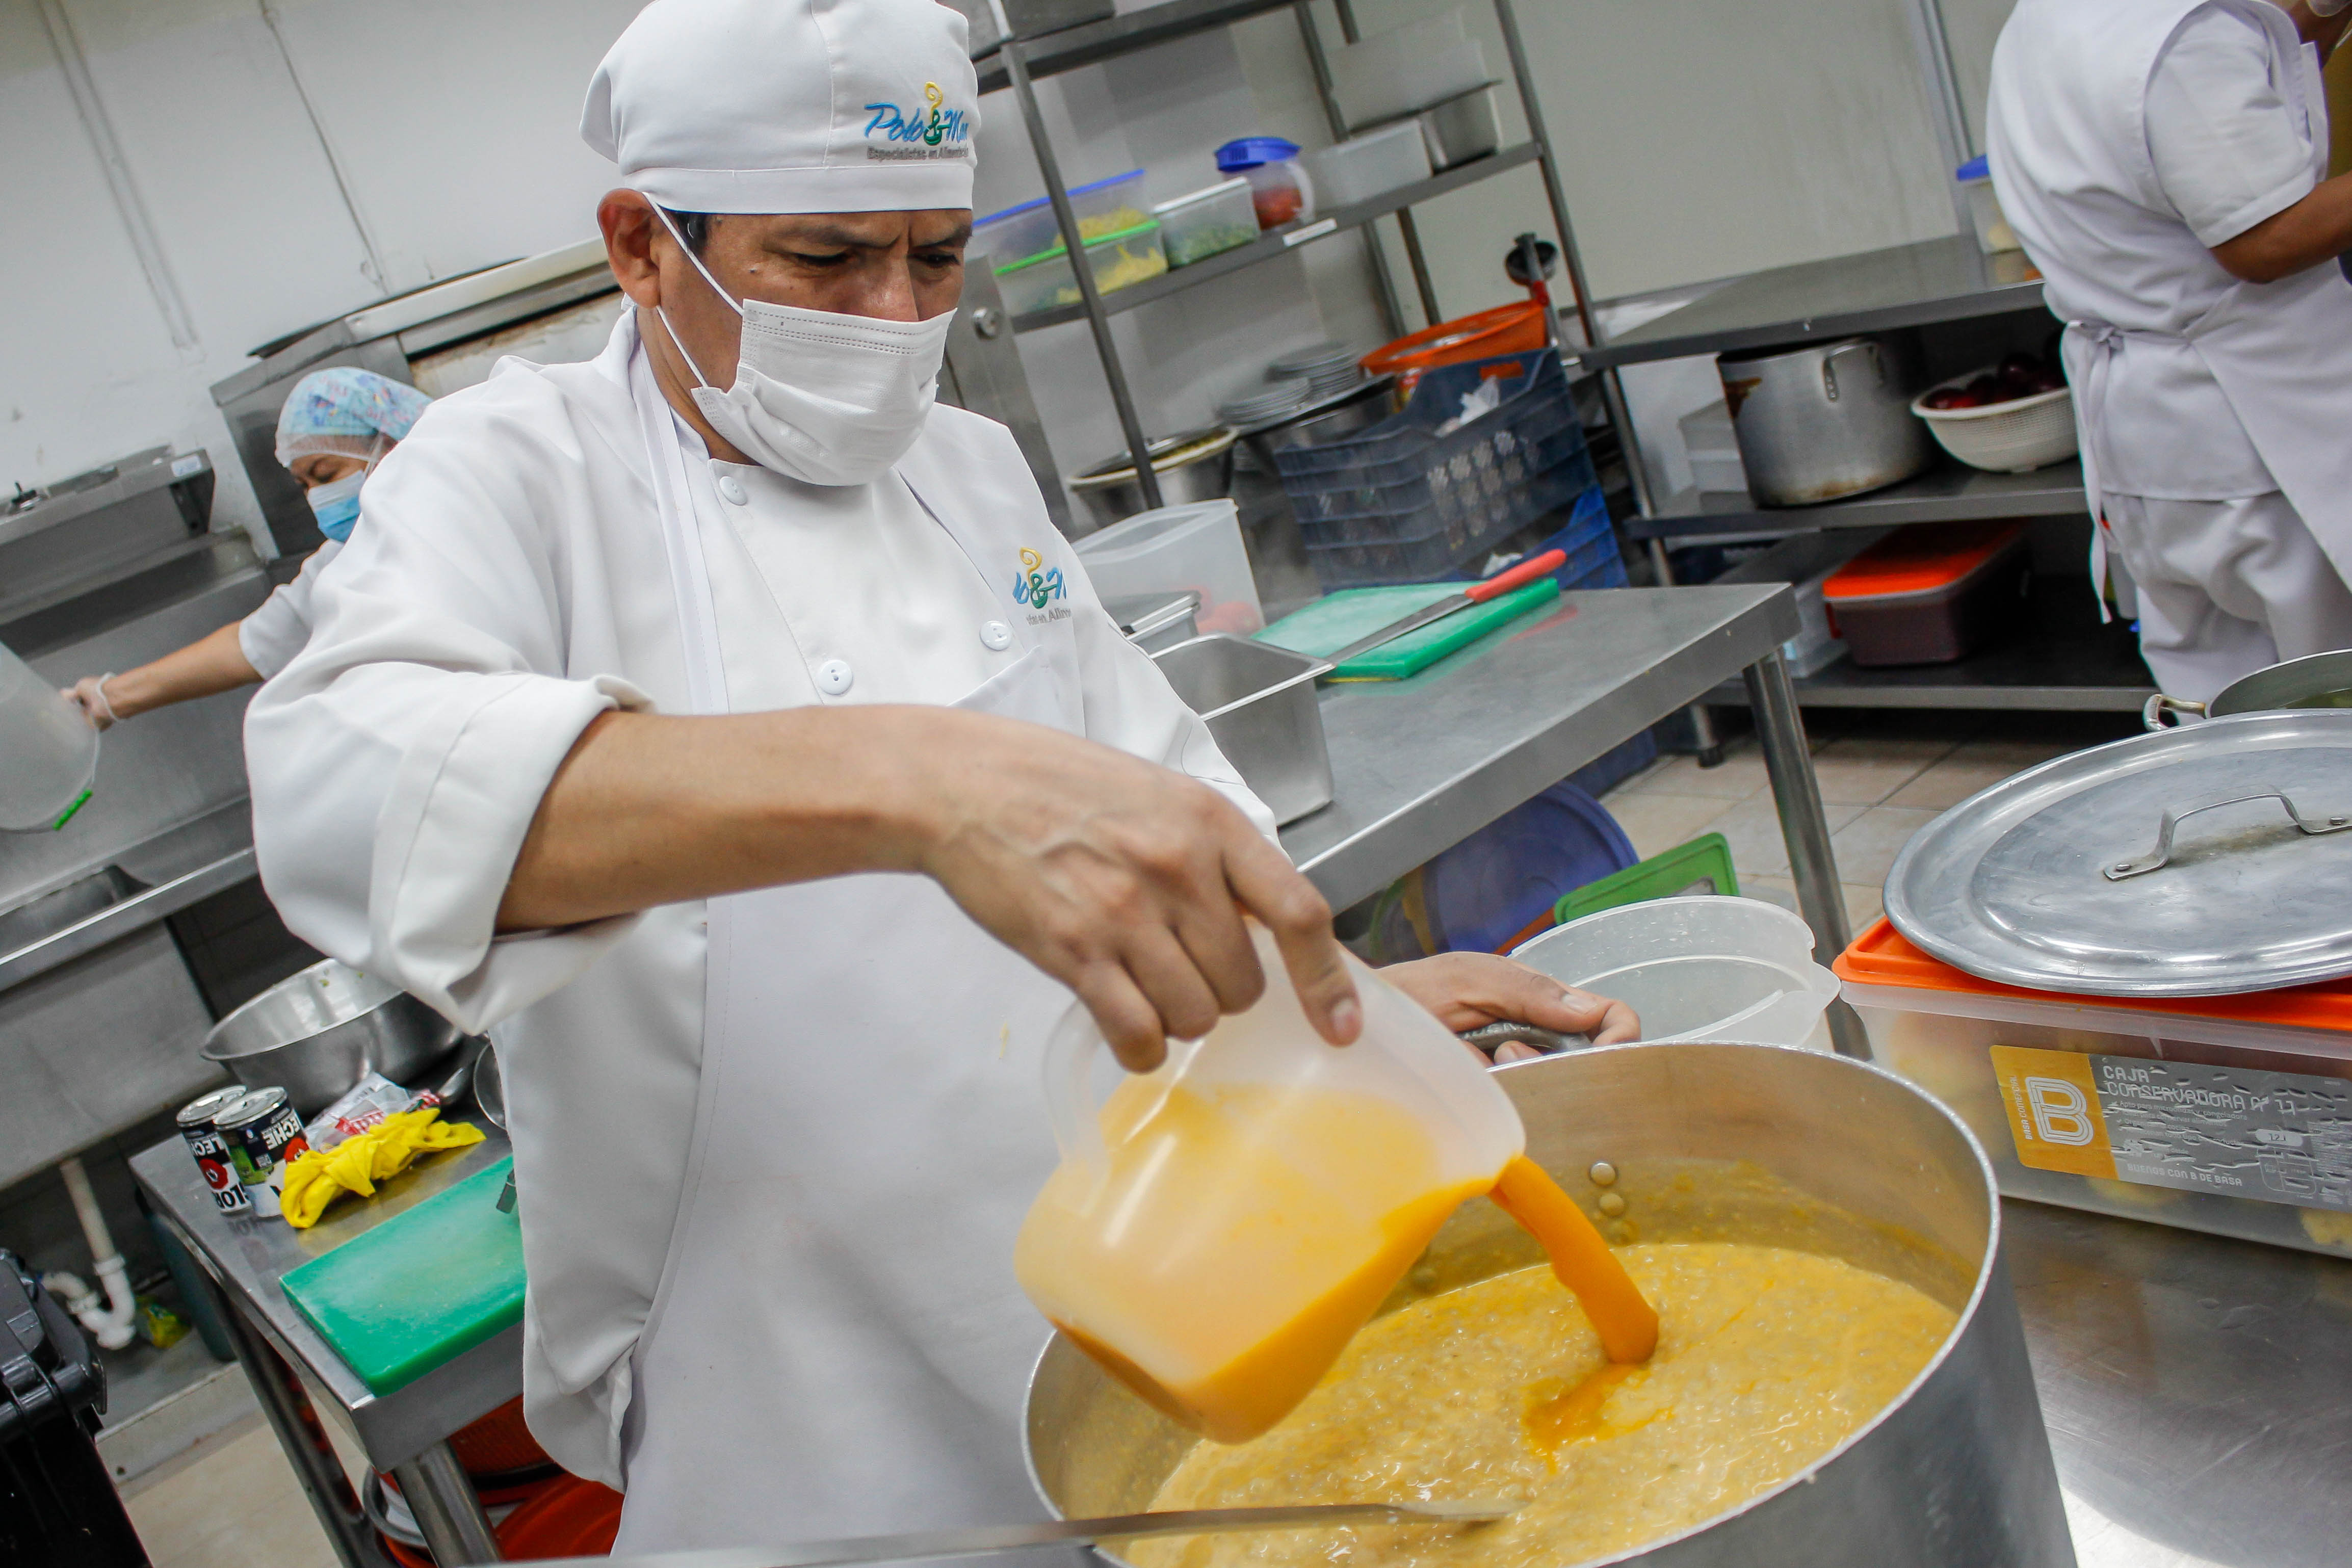 Essalud - Nutricionistas del Hospital Angamos promueven prácticas de alimentación saludable gracias al compromiso de los campesinos de entregar productos de calidad